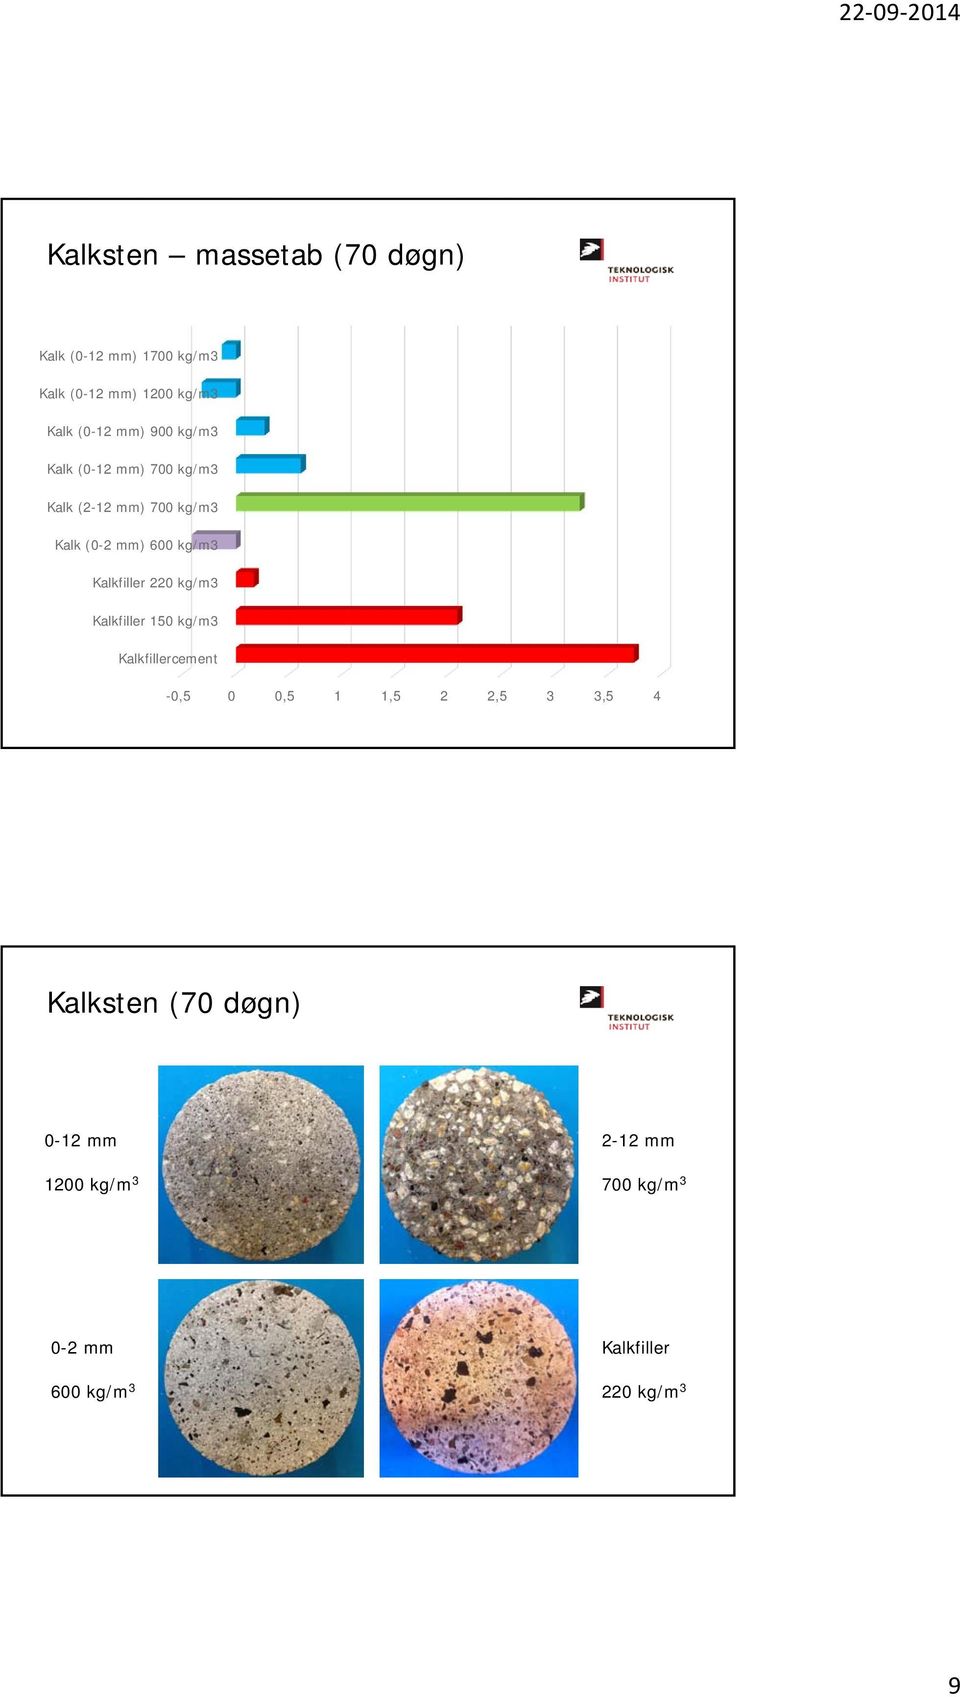 Kalkfiller 220 kg/m3 Kalkfiller 150 kg/m3 Kalkfillercement -0,5 0 0,5 1 1,5 2 2,5 3 3,5 4